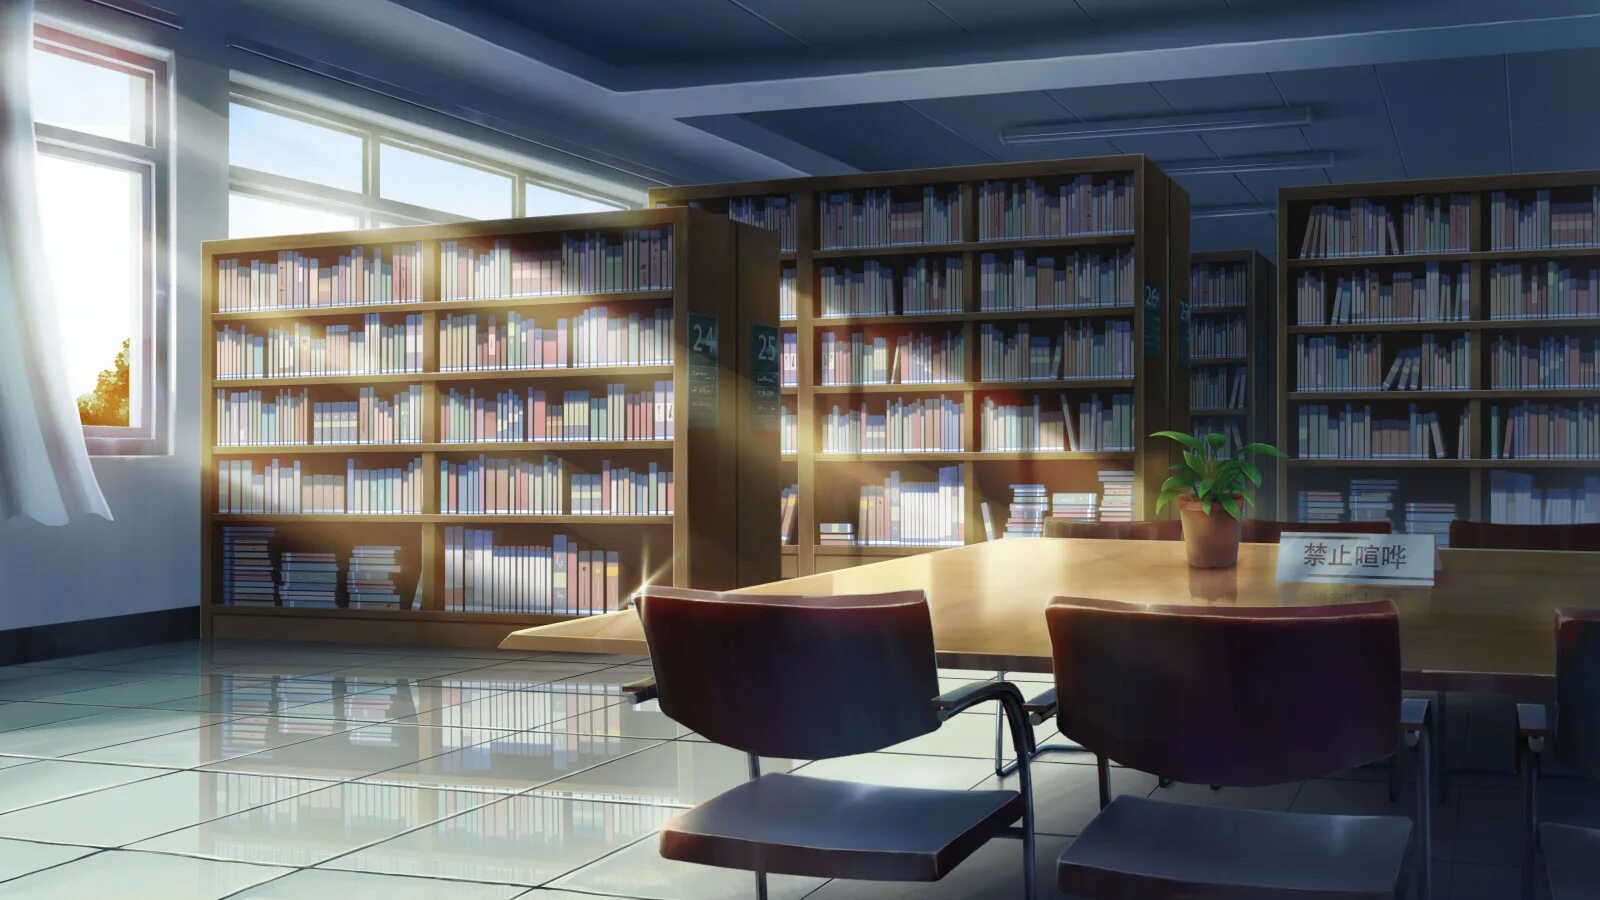 Compile library. Библиотека Японии читальный зал. Красивая Школьная библиотека. Библиотека арт.